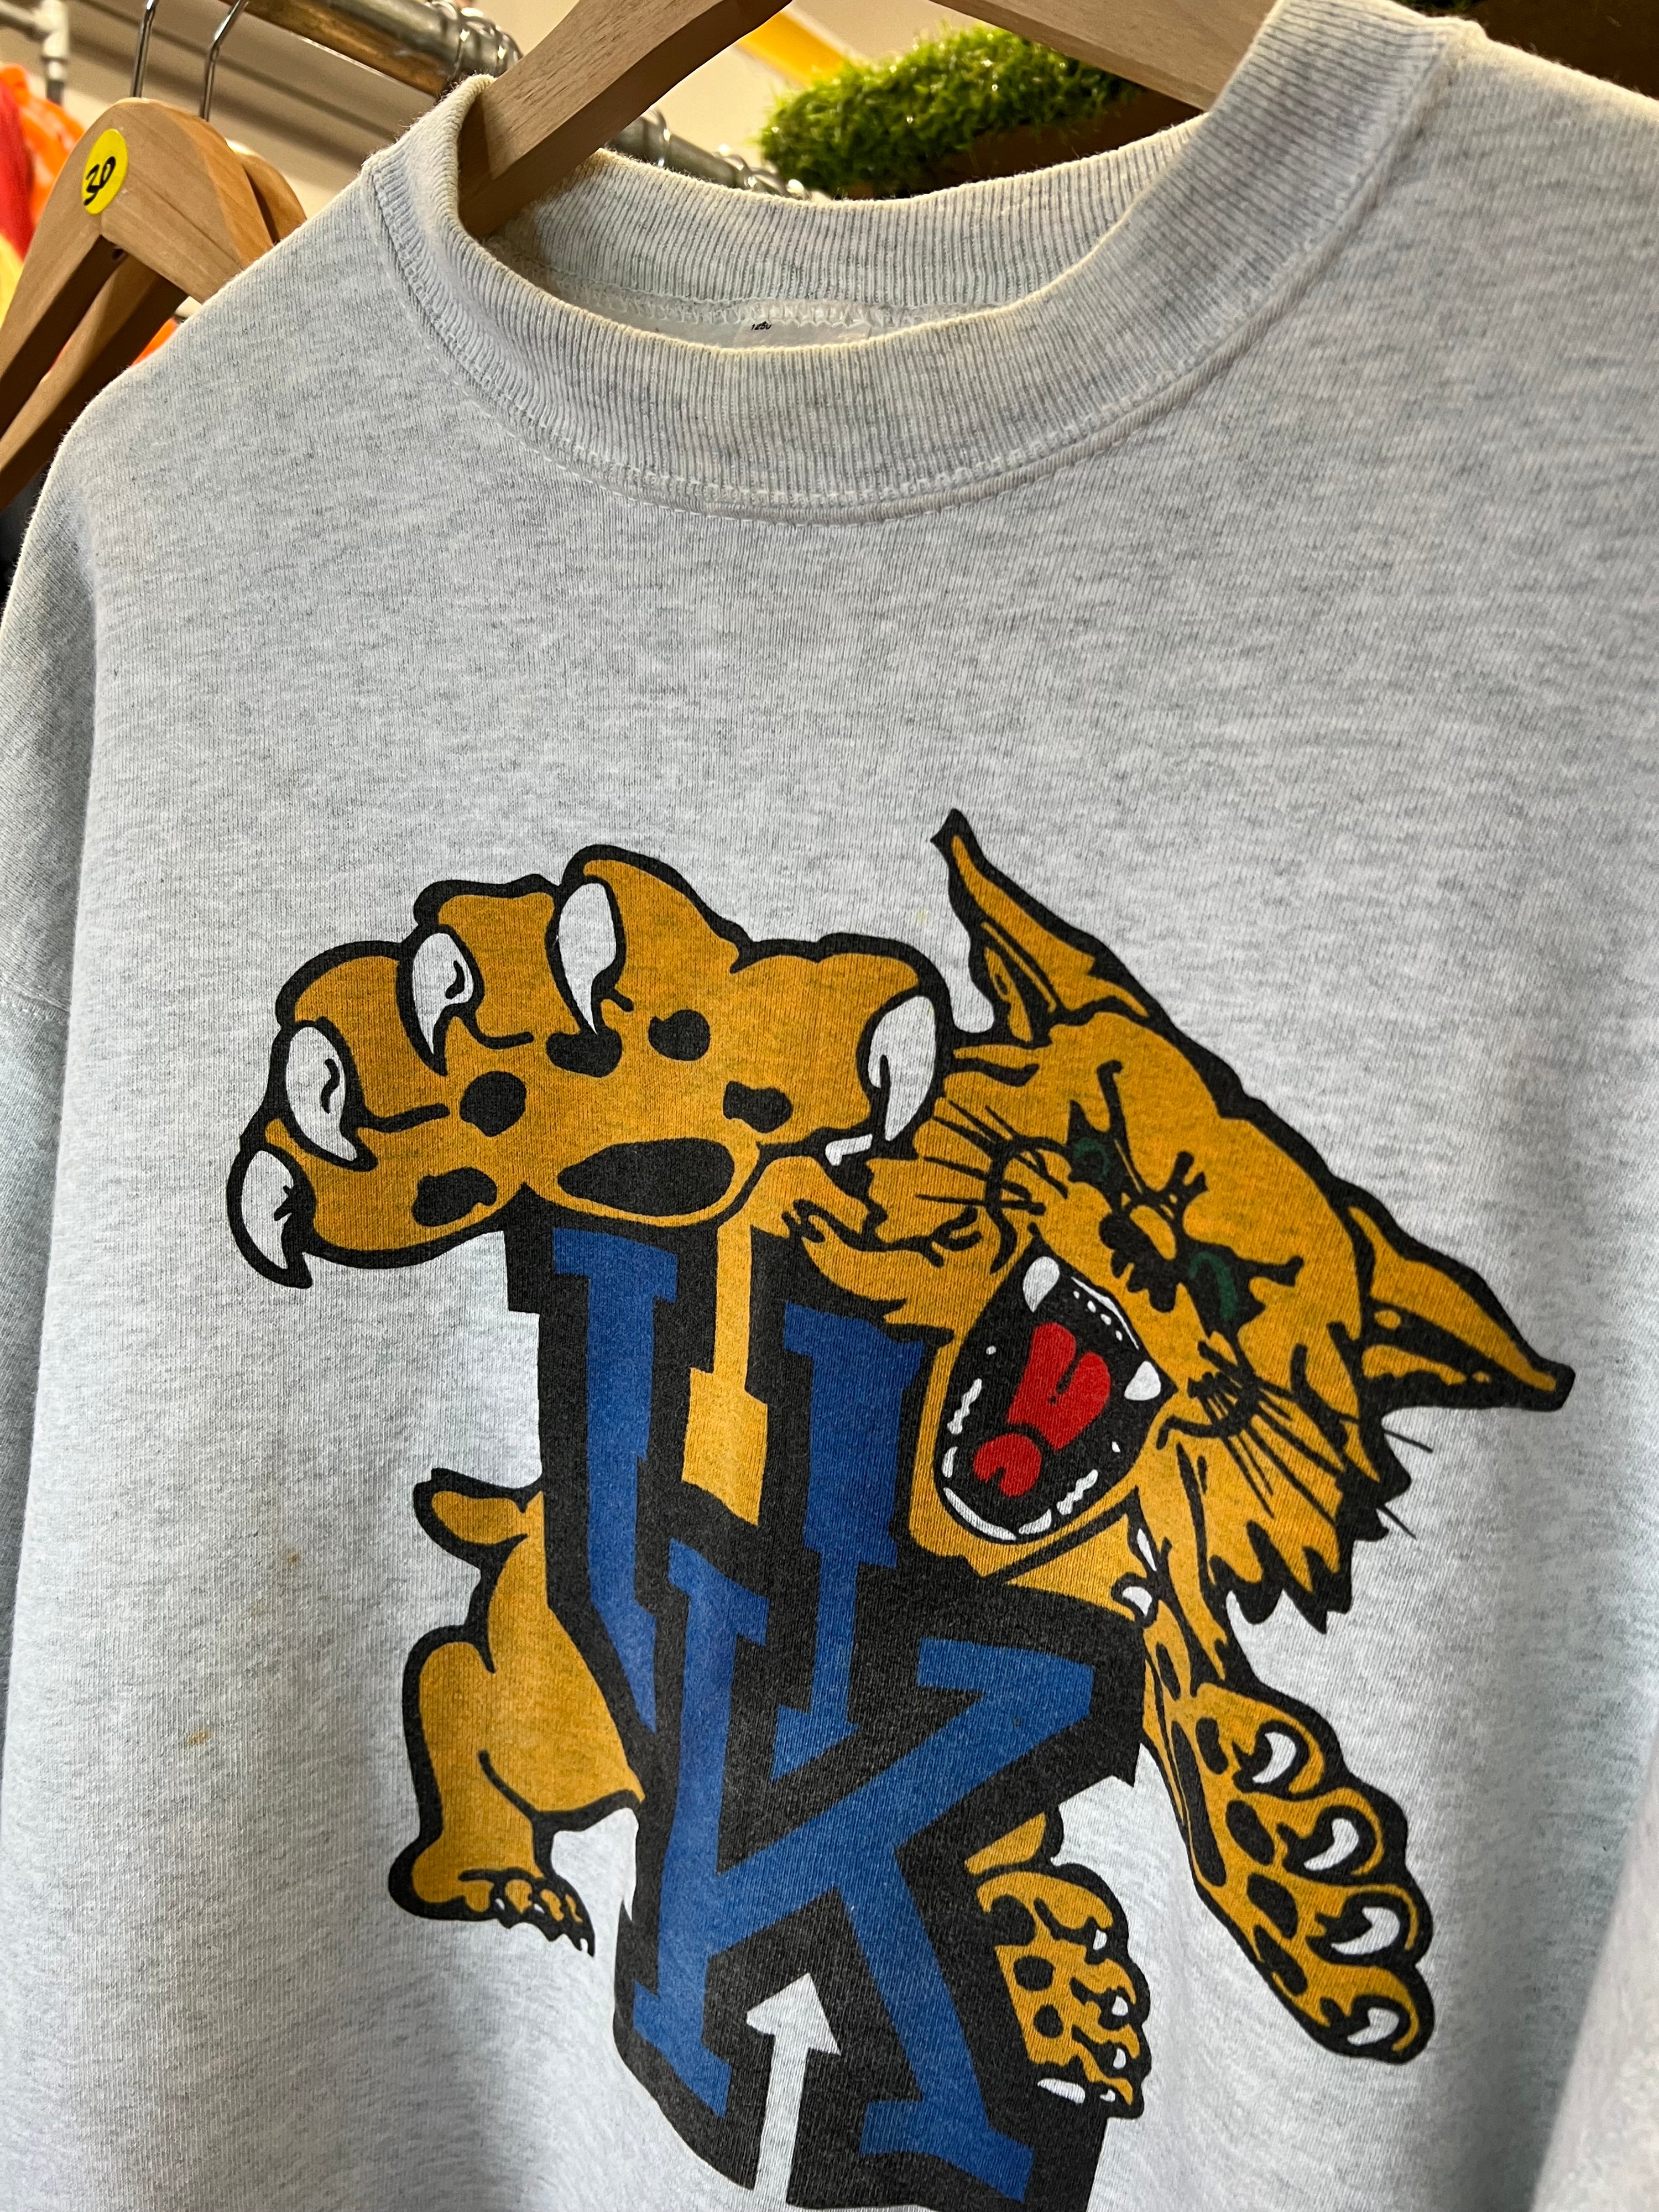 XL - 1990s University Of Kentucky Heavyweight Jumper